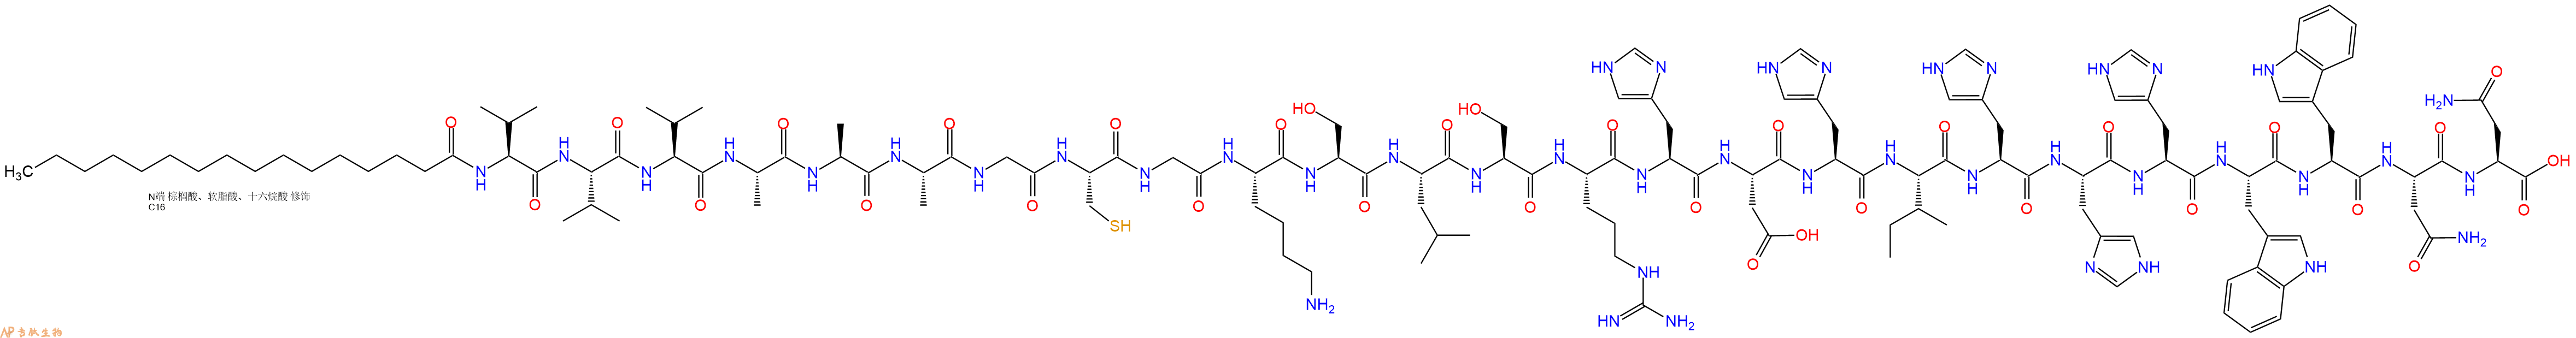 专肽生物产品棕榈酸-VVVAAAGCGKSLSRHDHIHHHWWNN